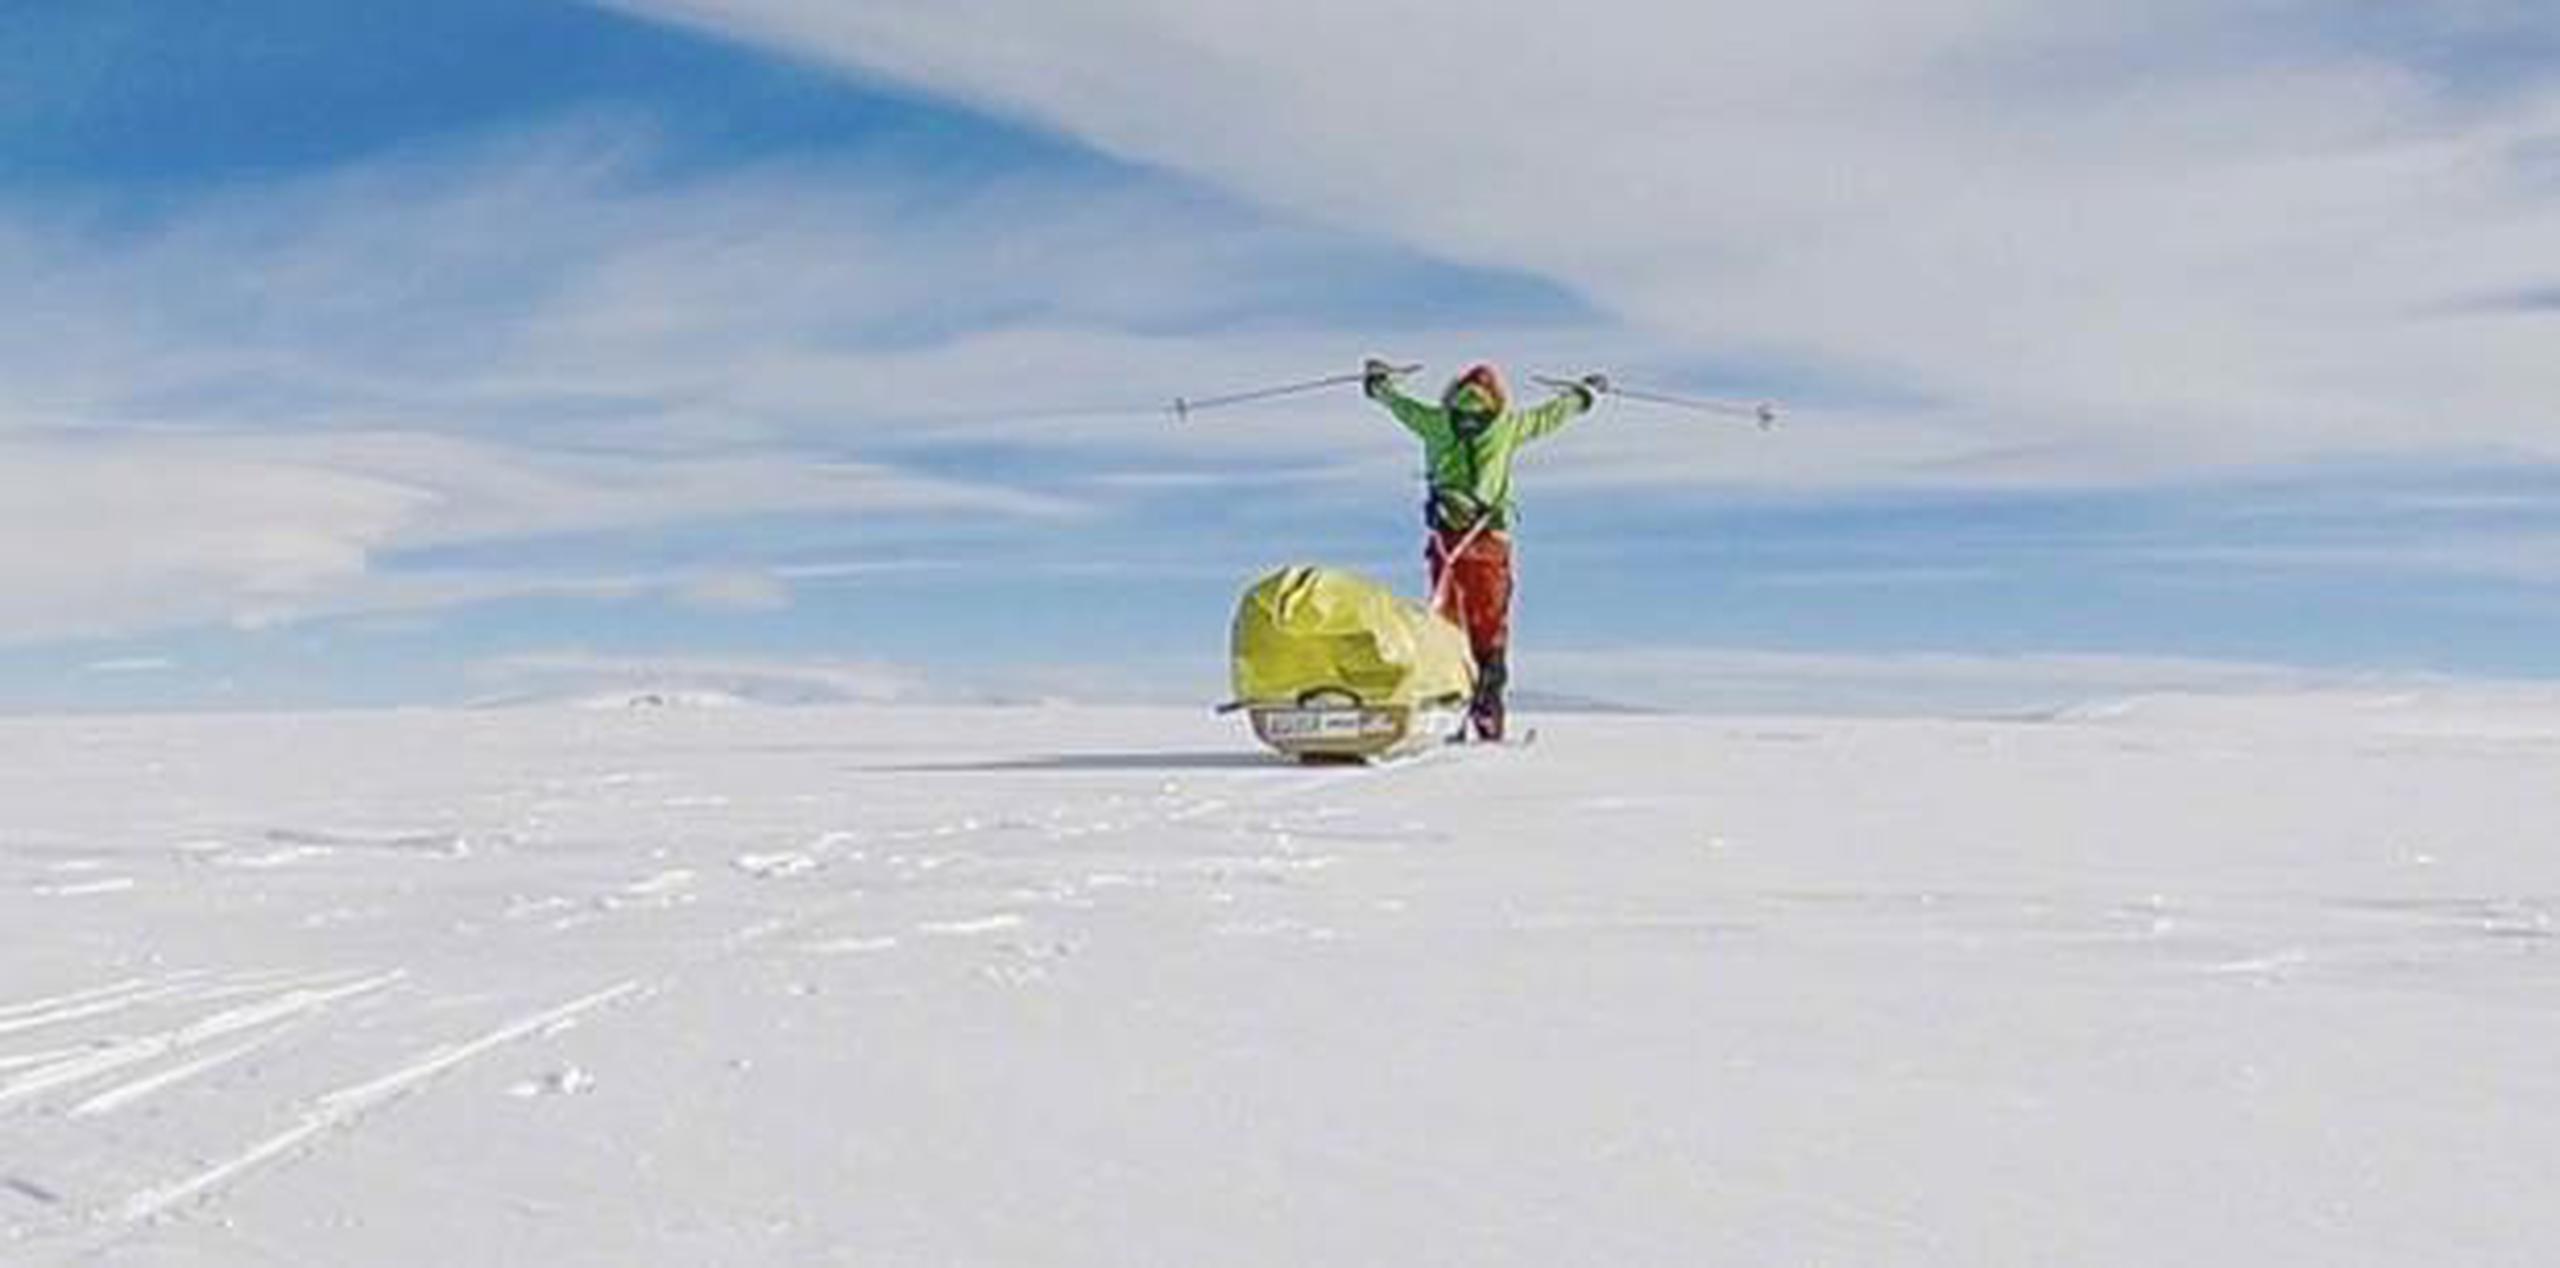 El aventurero estadounidense Colin O’Brady posando durante su recorrido por la Antártida ayer, miércoles. (Colin O'Brady vía AP)